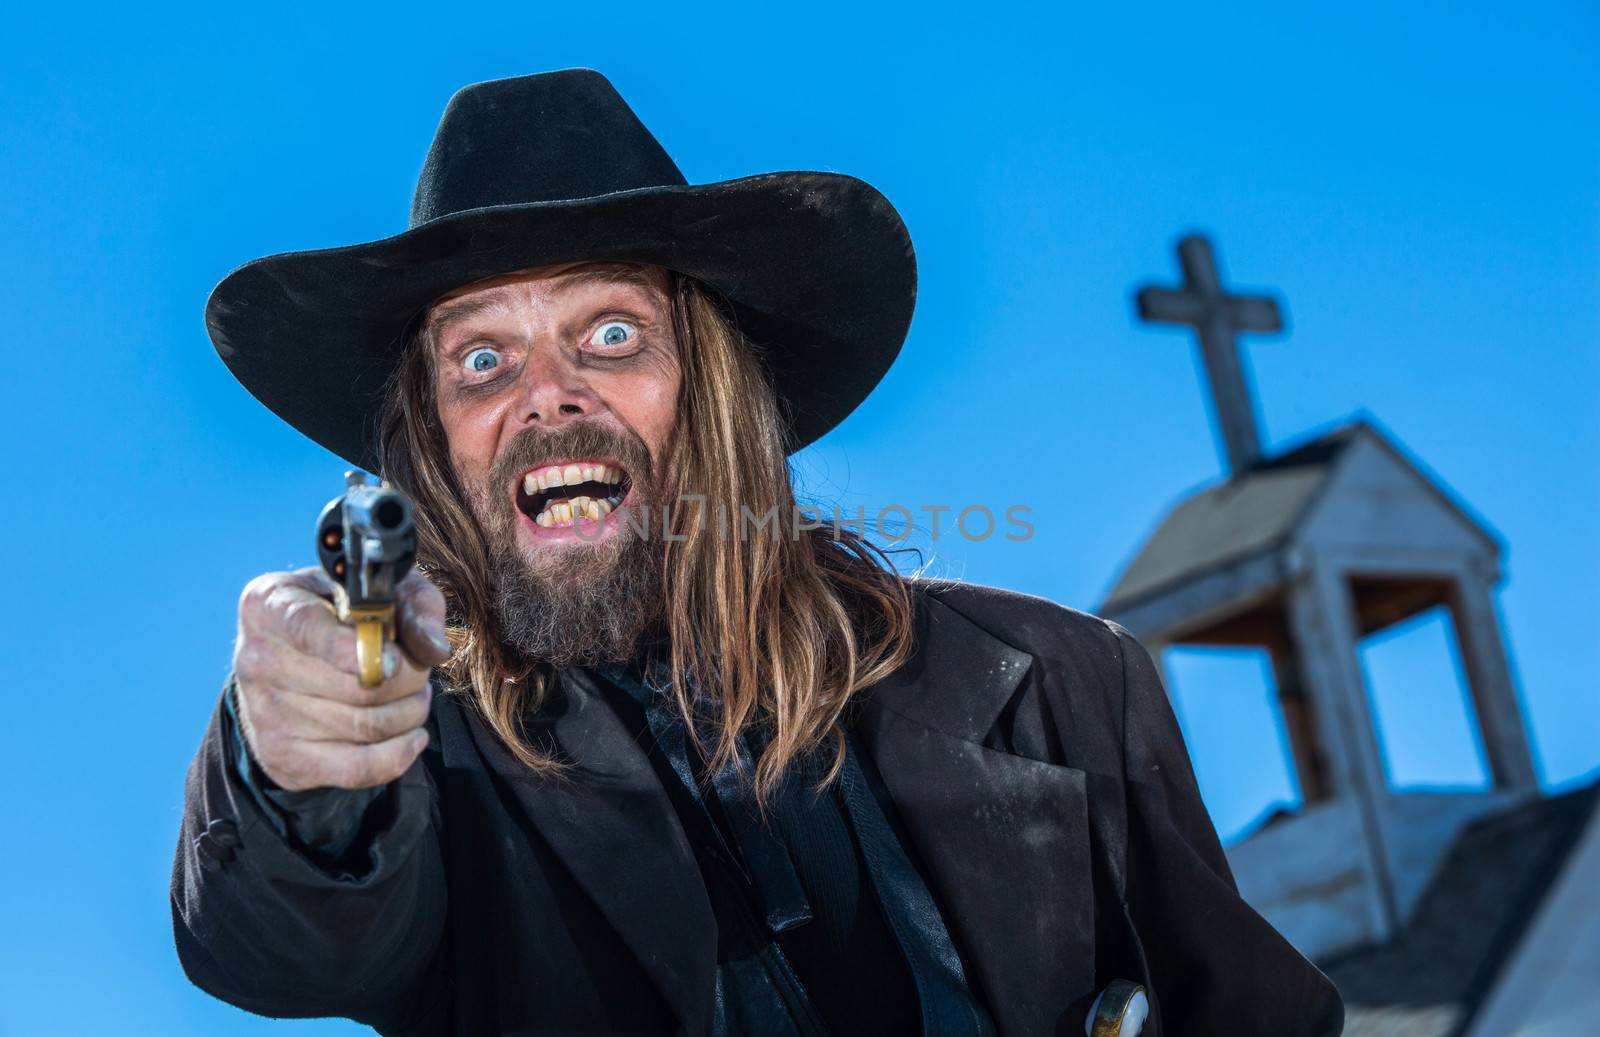 A laughing cowboy holding a gun near a church